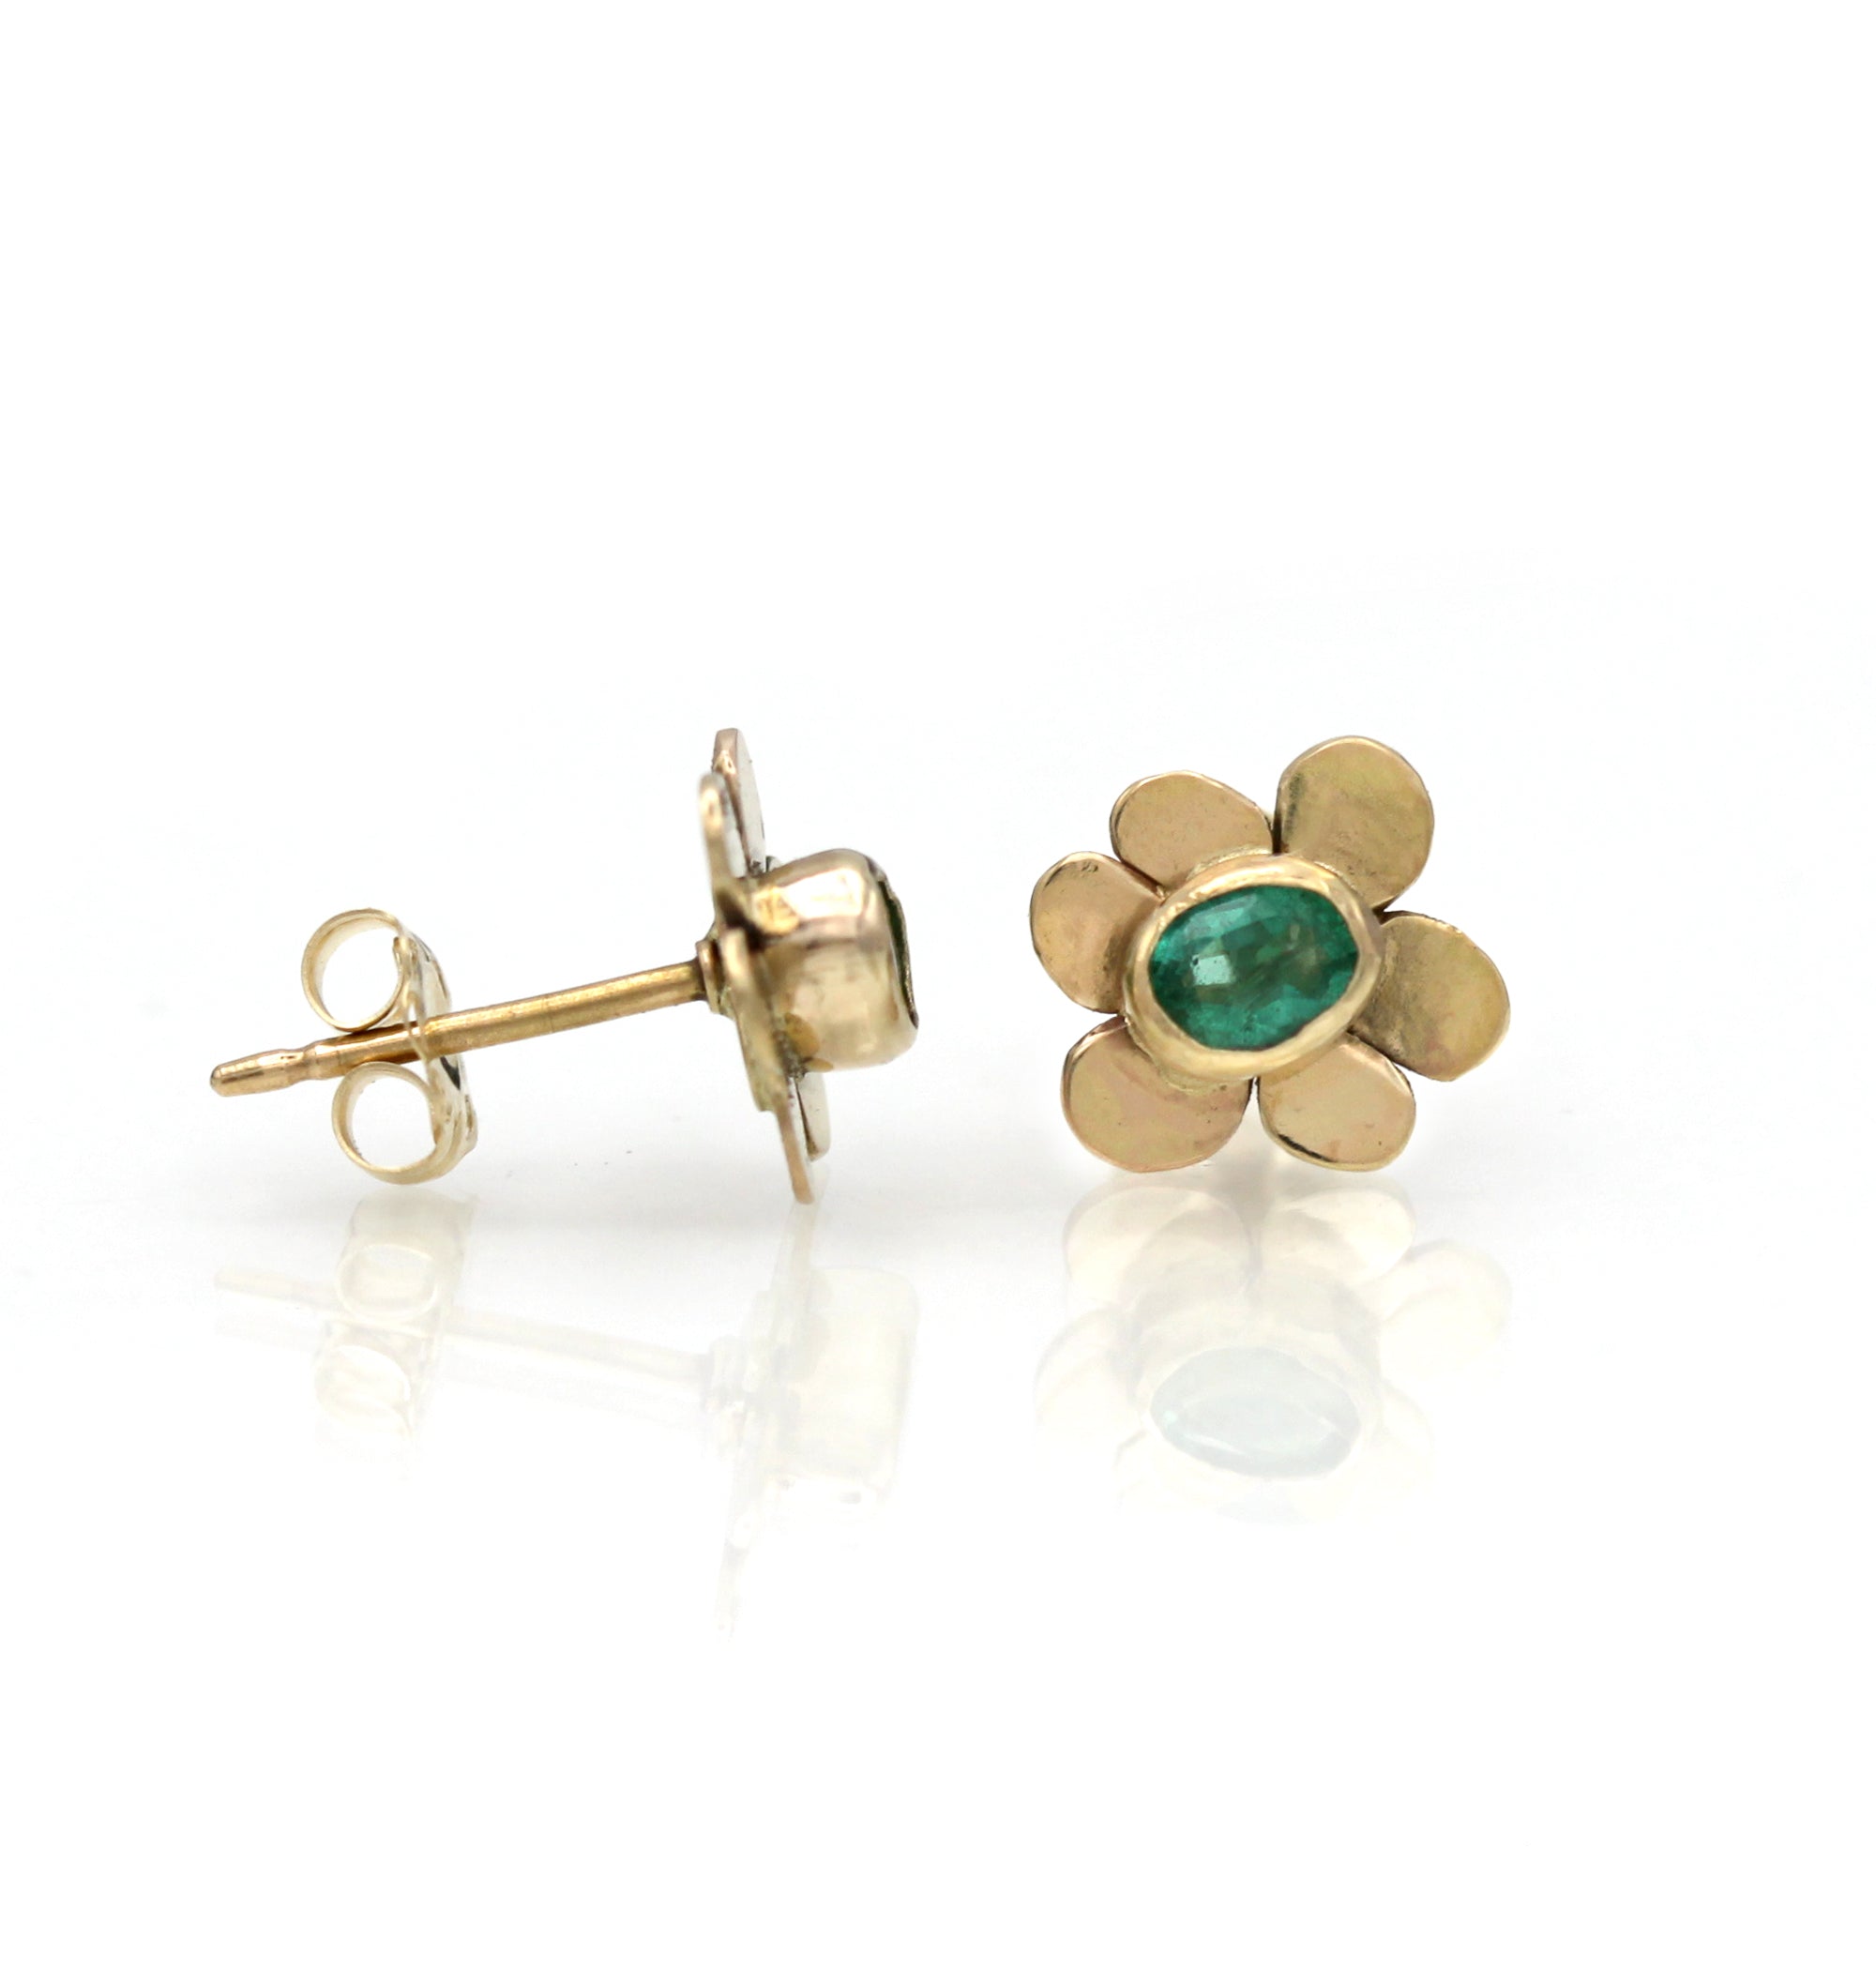 14K Emerald Earrings, Emerald Flower Earrings, One of a kind